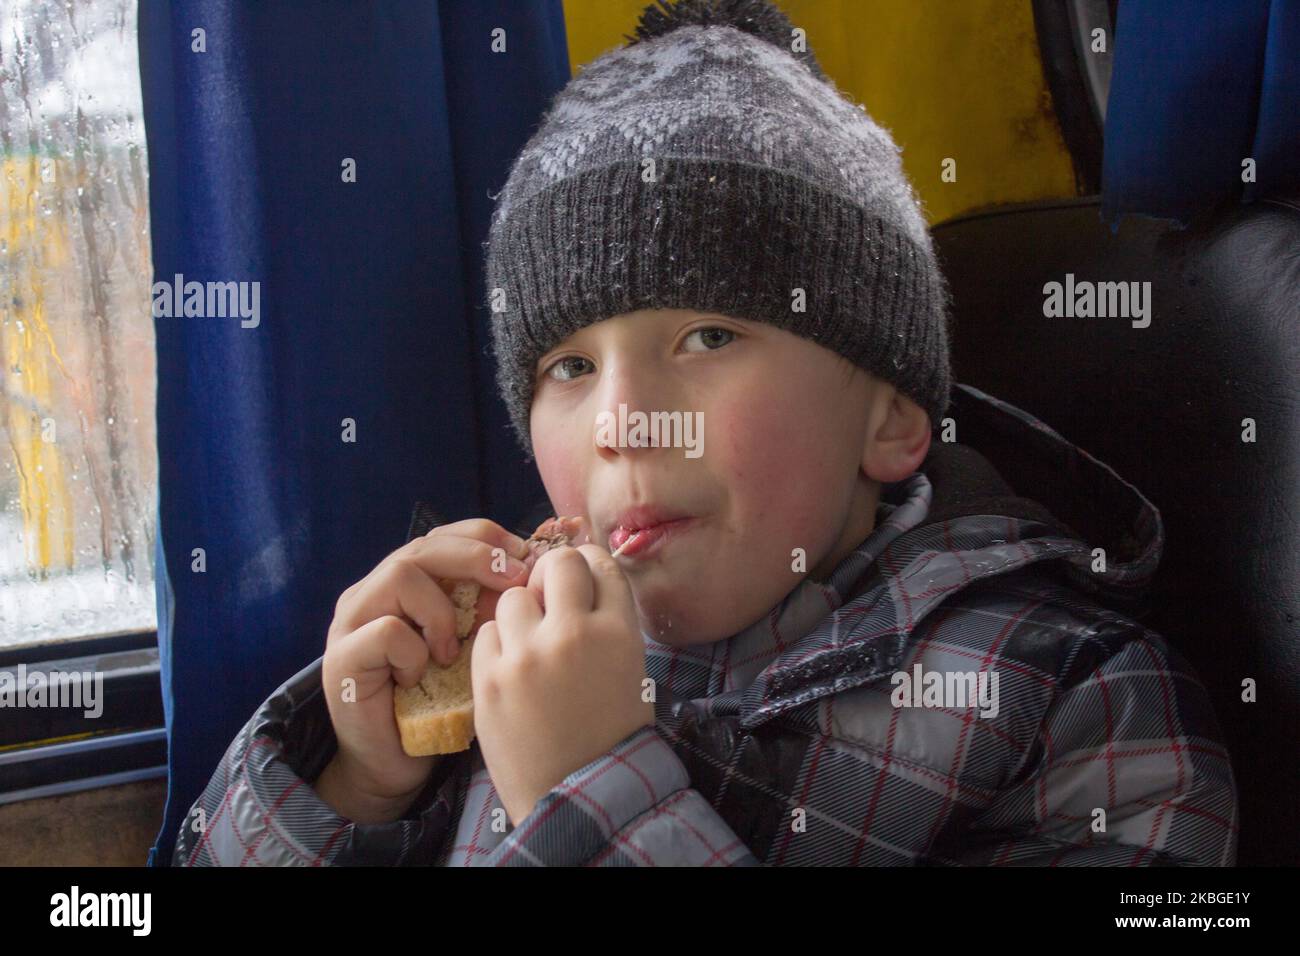 Porträt eines Jungen, der im Auto des Winters Sandwiches isst Stockfoto